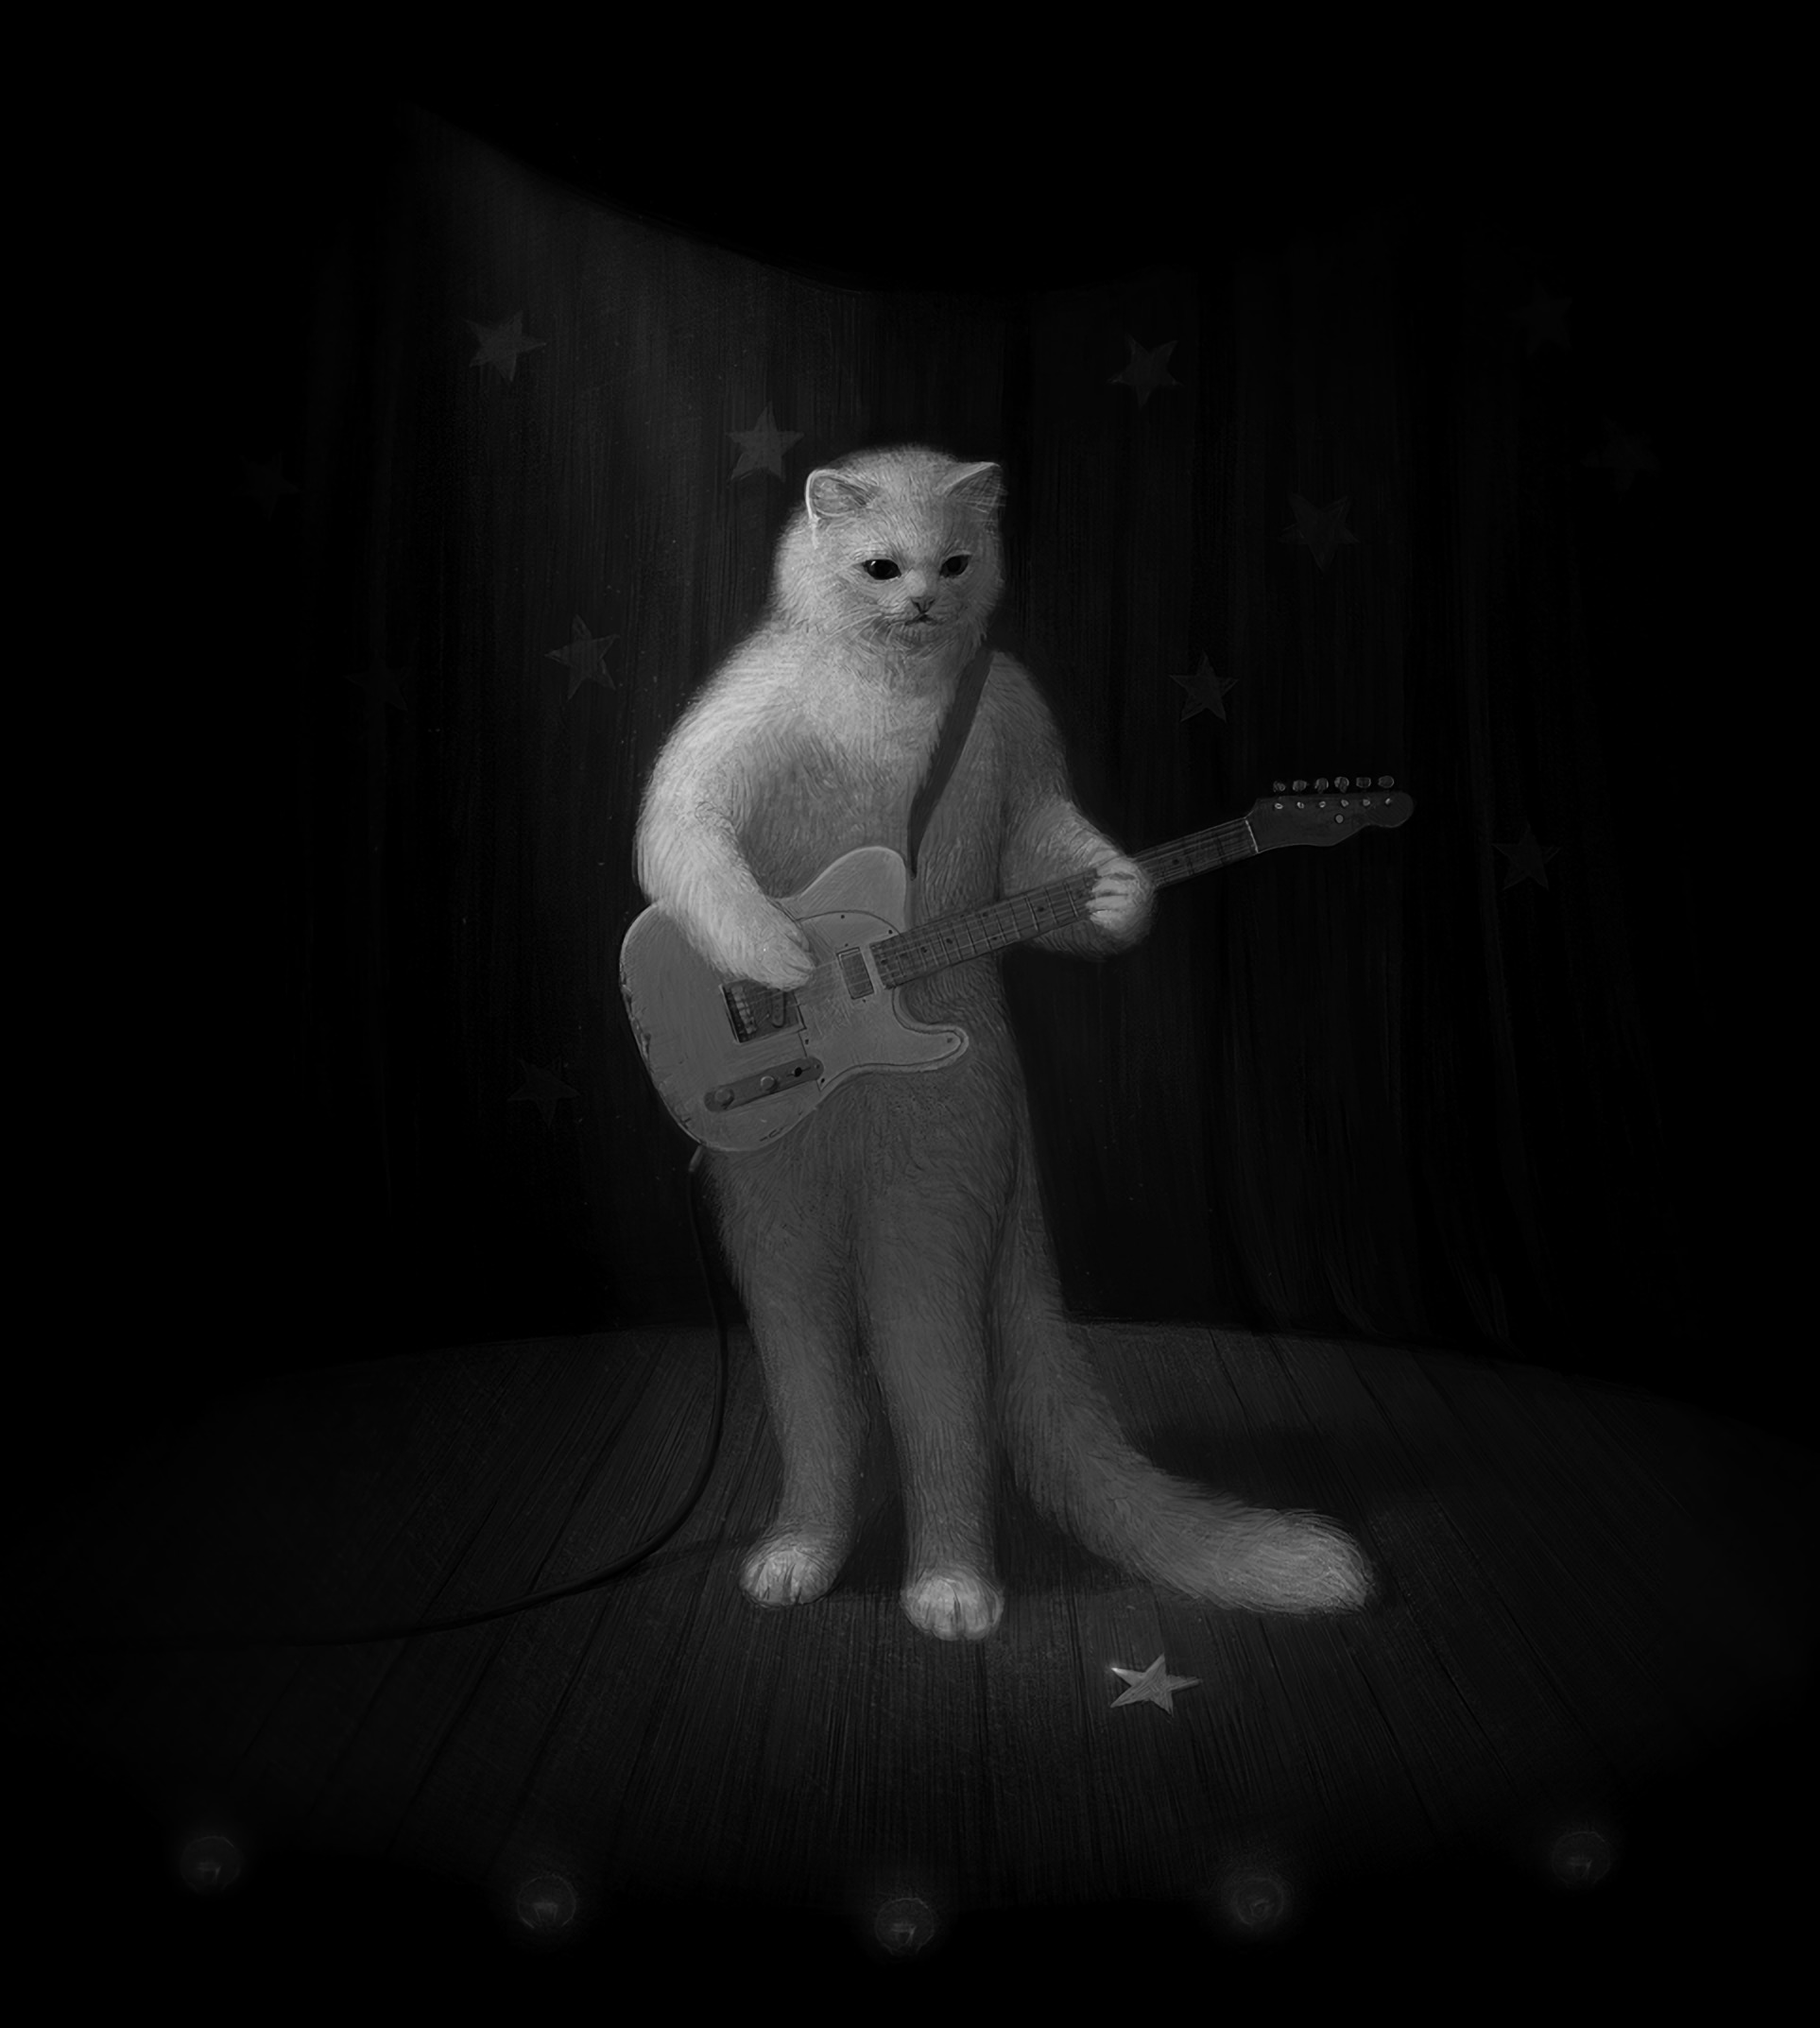 bw, art, musician, guitar, chb, cat